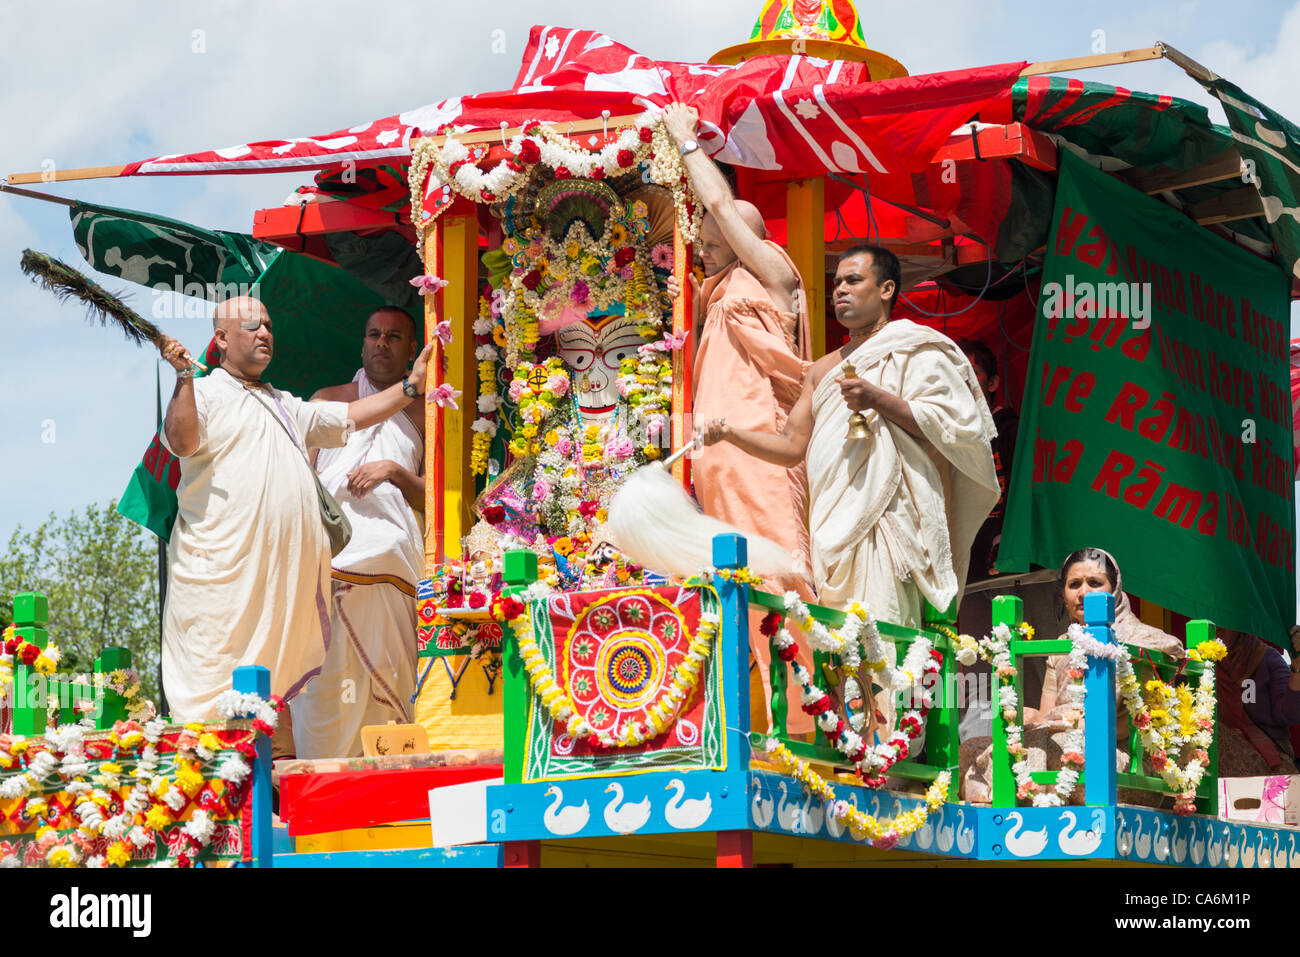 Londres, Royaume-Uni. 17 Juin, 2012. Rathayatra parade avec les grandes foules d'adeptes Hare Krishna à Londres. Banque D'Images